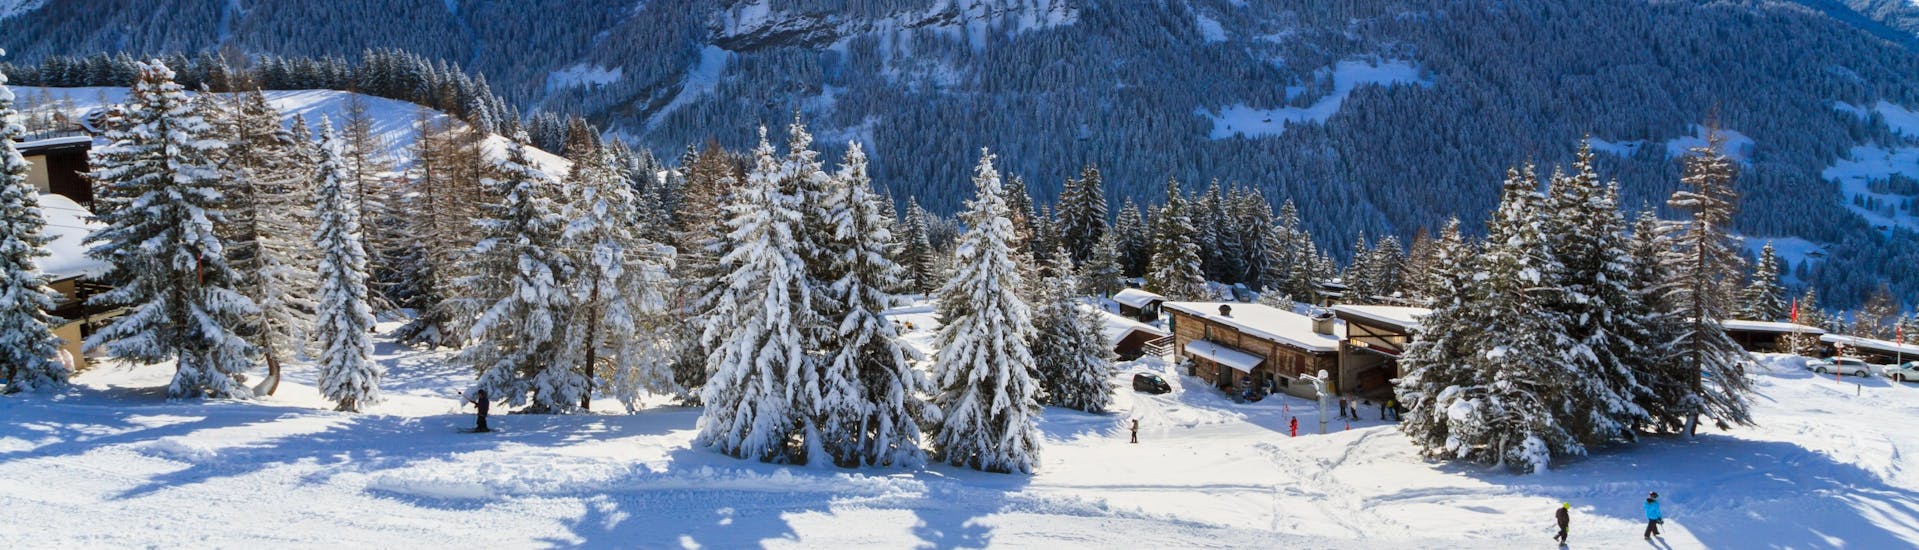 Ein Panoramablick auf die Skipisten und die umliegenden Berge von Villars, einem beliebten schweizer Skigebiet, in dem Besucher bei einer der örtlichen Skischulen einen Skikurs buchen können.